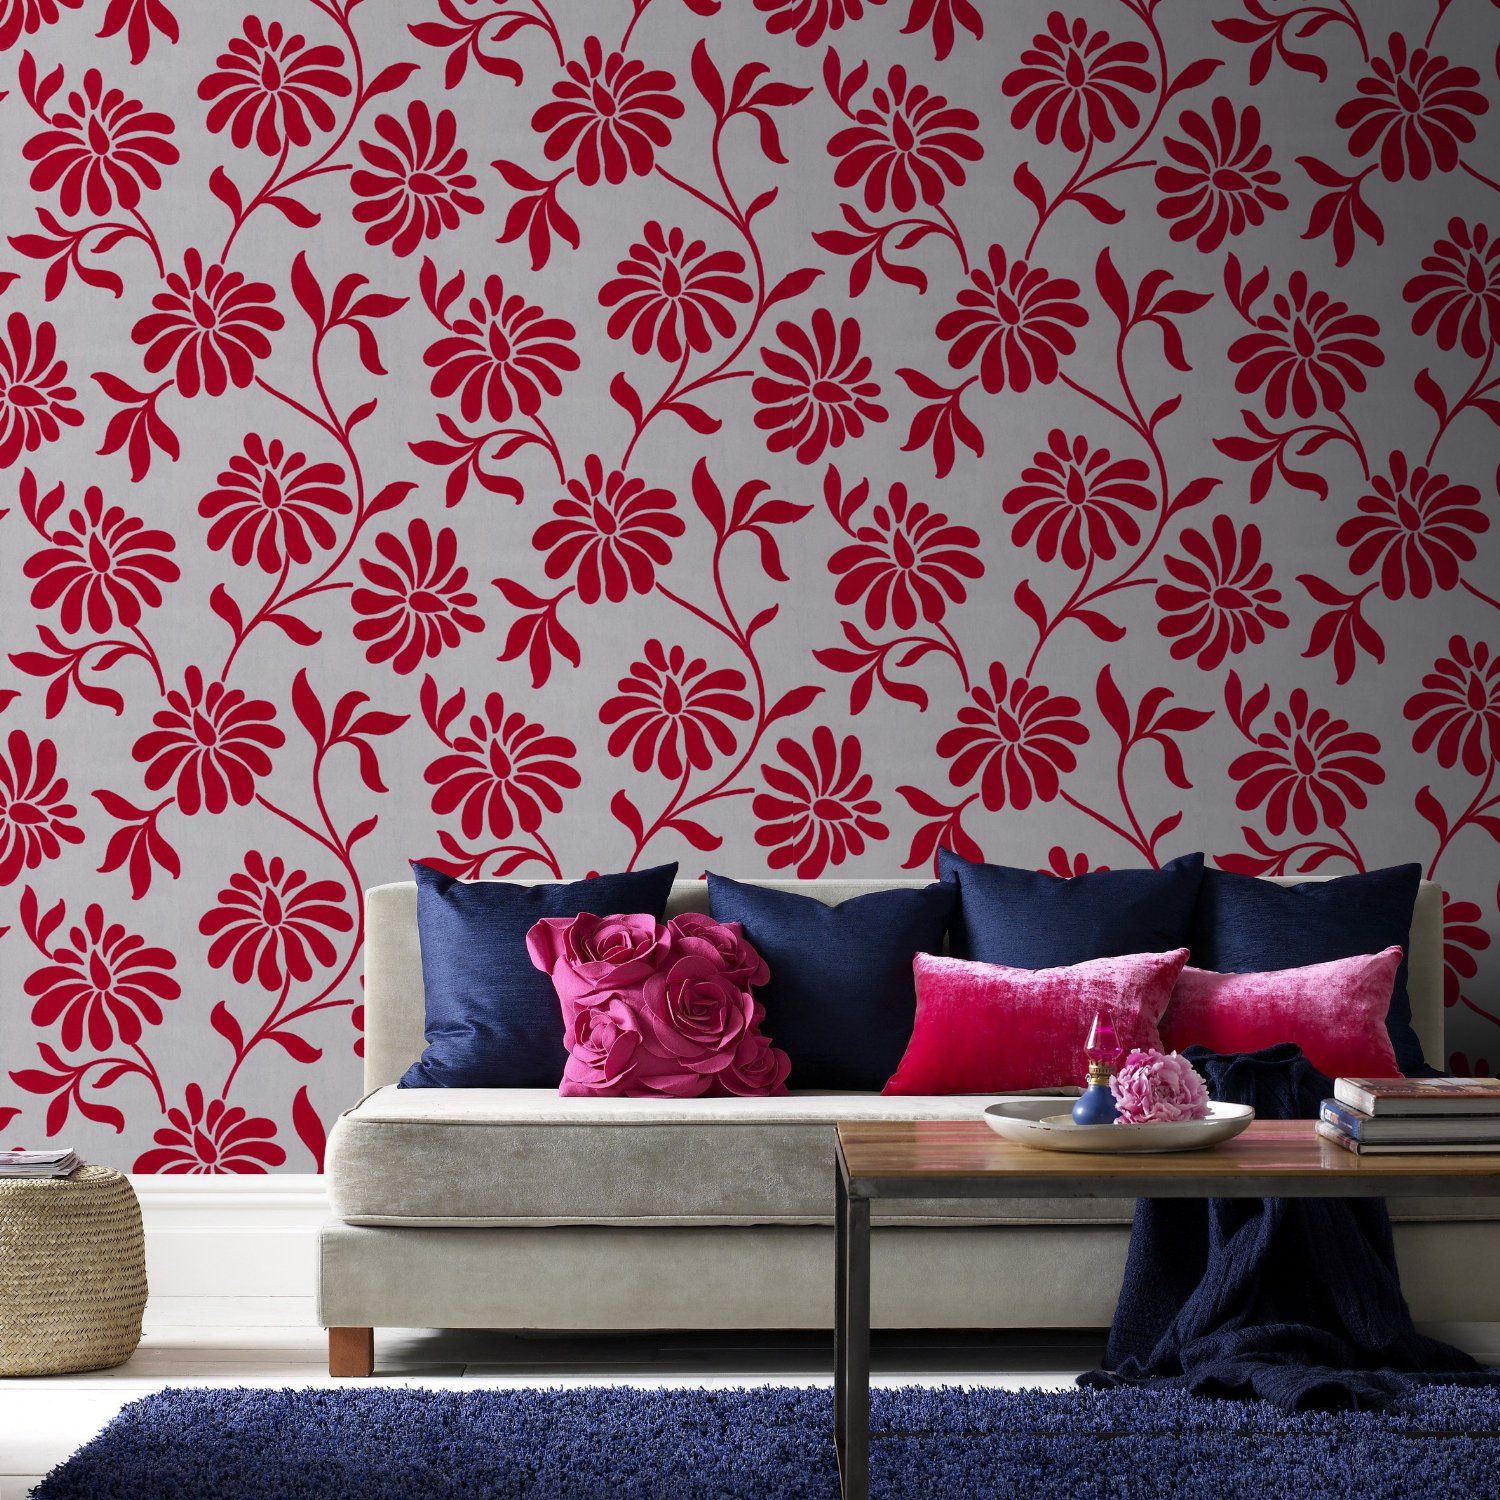 Эффектный контраст между цветами на стене и диванными подушками